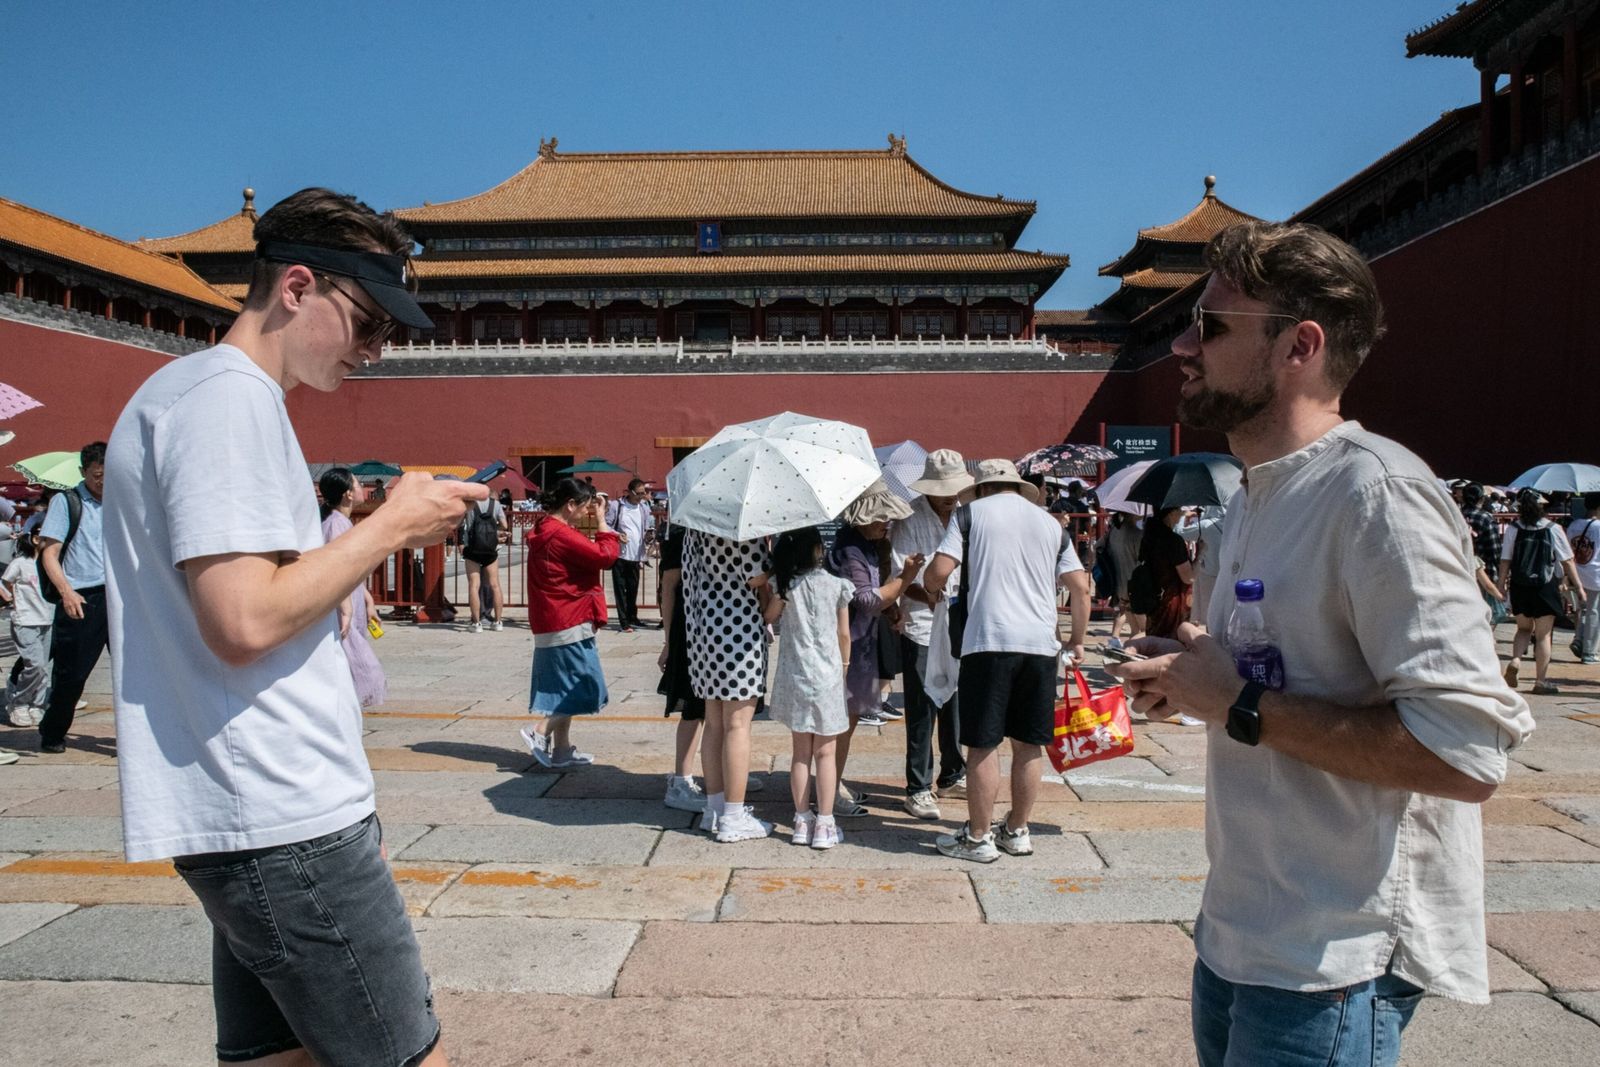 الصين تسهل إجراءات الحصول على التأشيرة لجذب السياح الأجانب